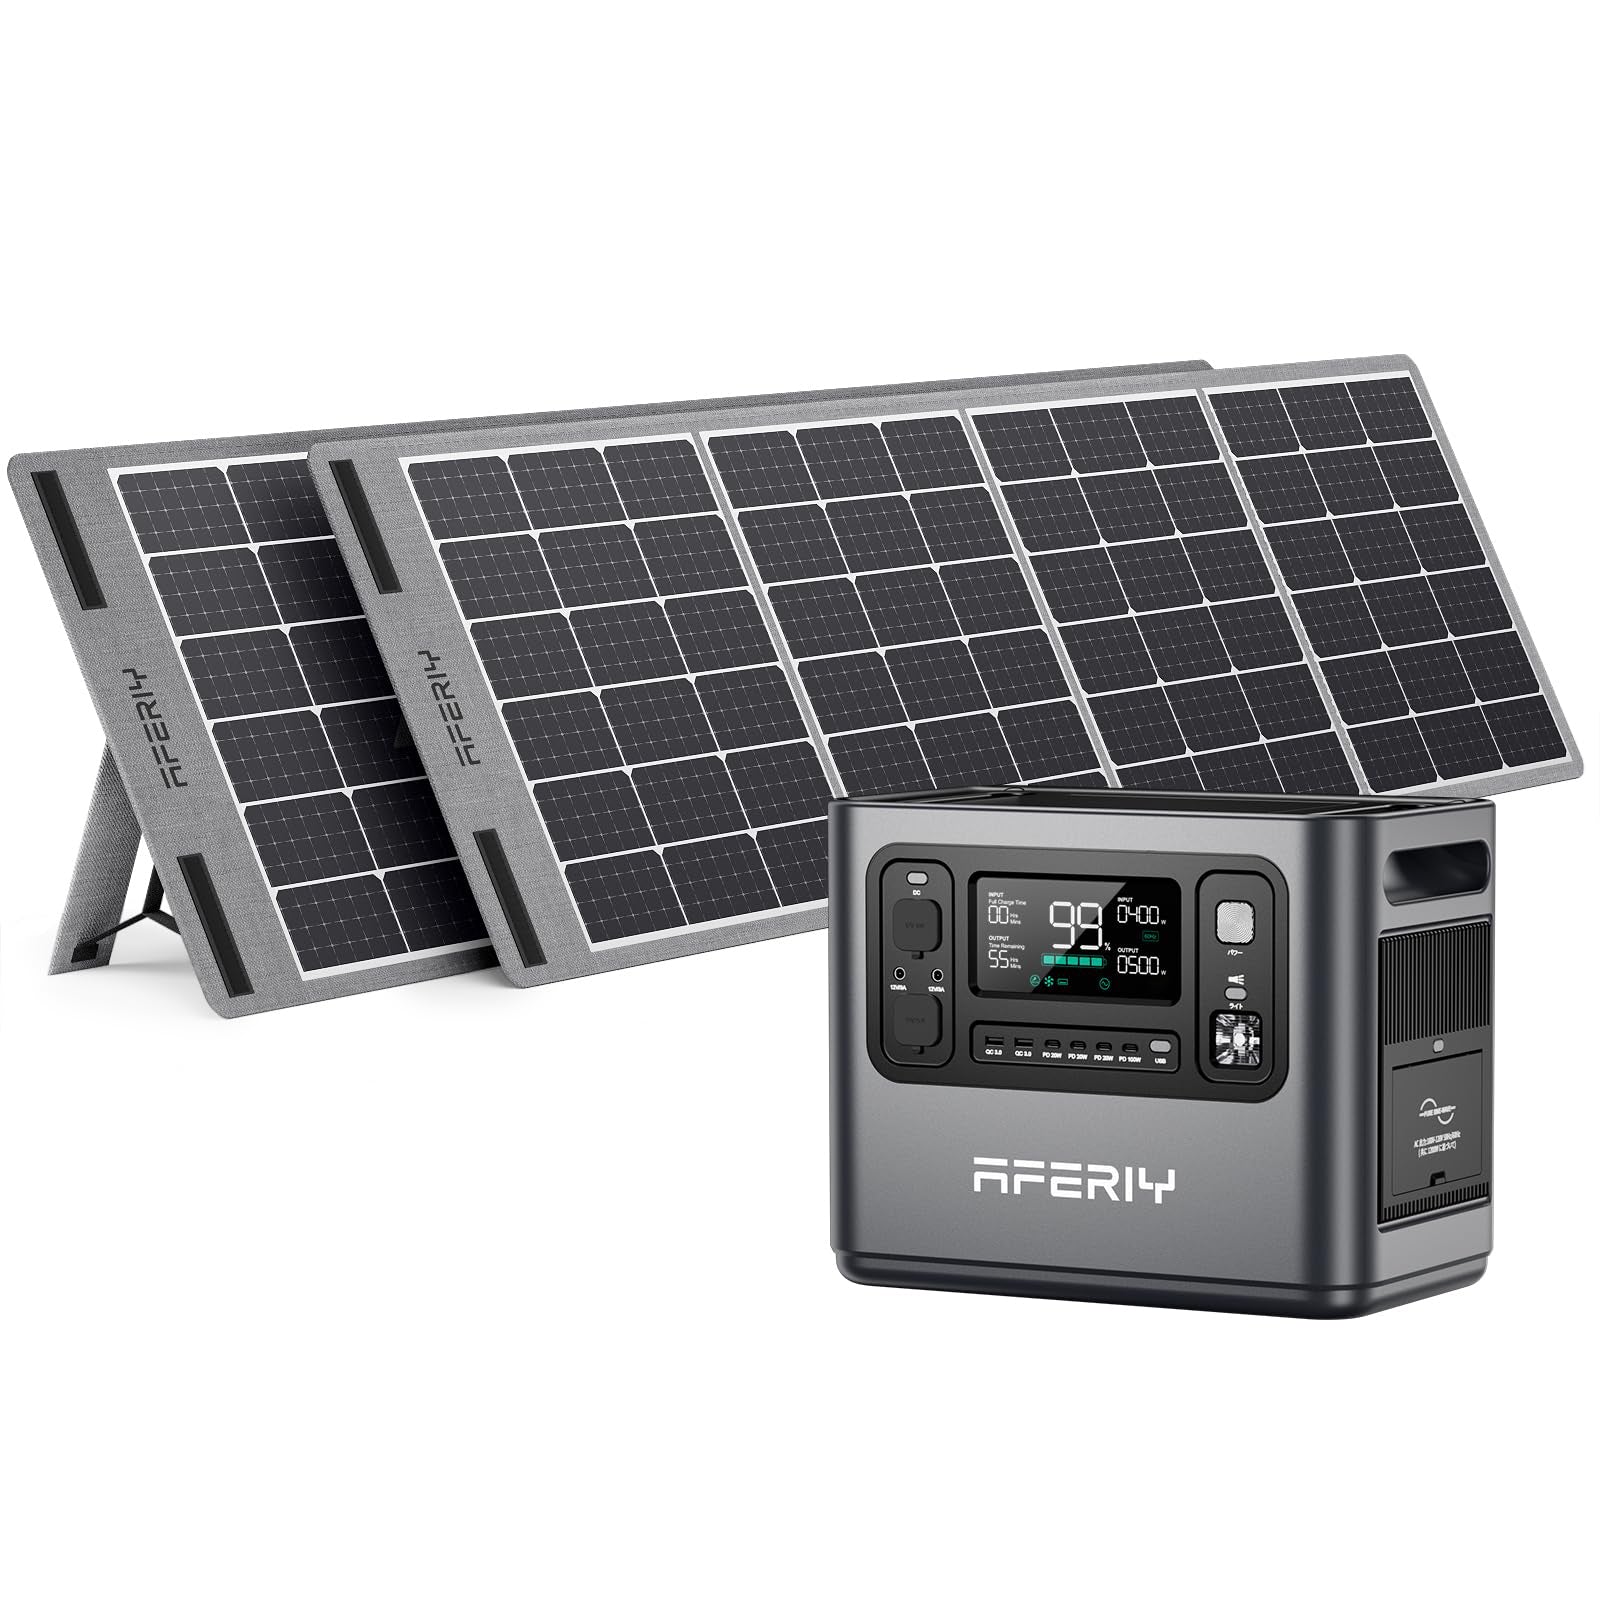 AFERIY Solar Generator P110 1200Wポータブル電源 200W ソーラーパネル セット - 1200W+200W*2